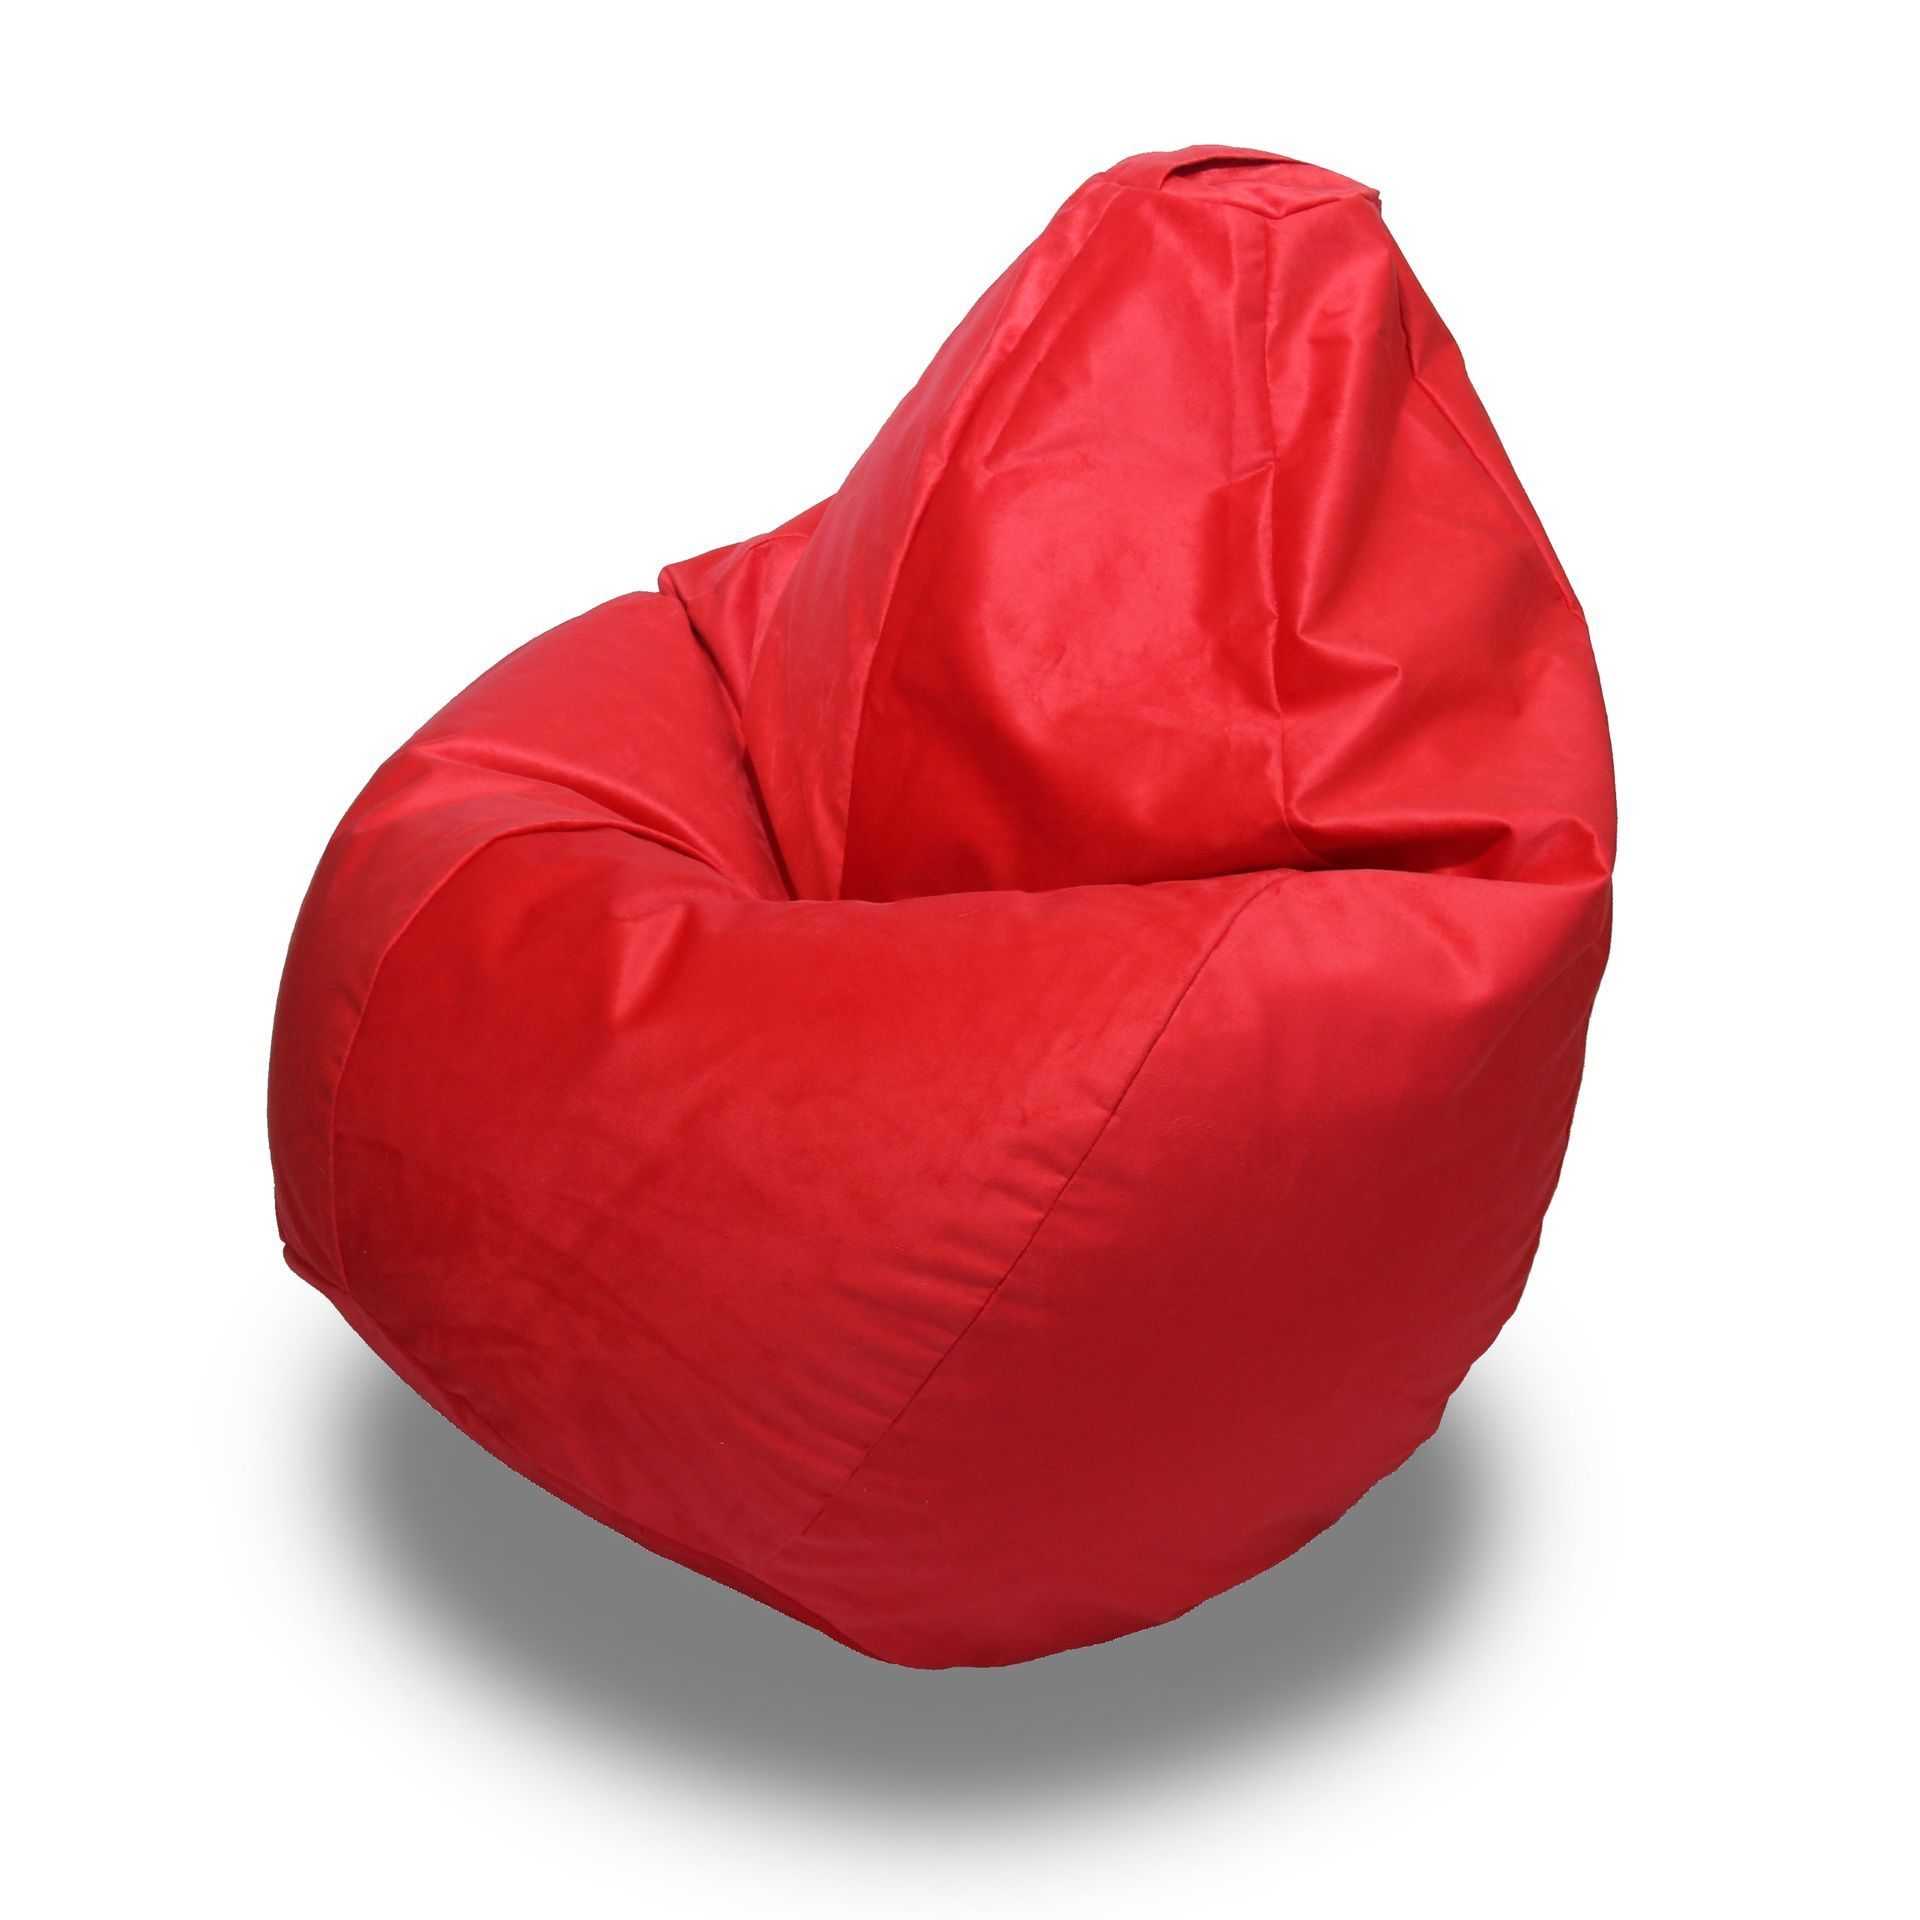 Комфортные кресла-мешки икеа — удачный выбор для любых интерьеров